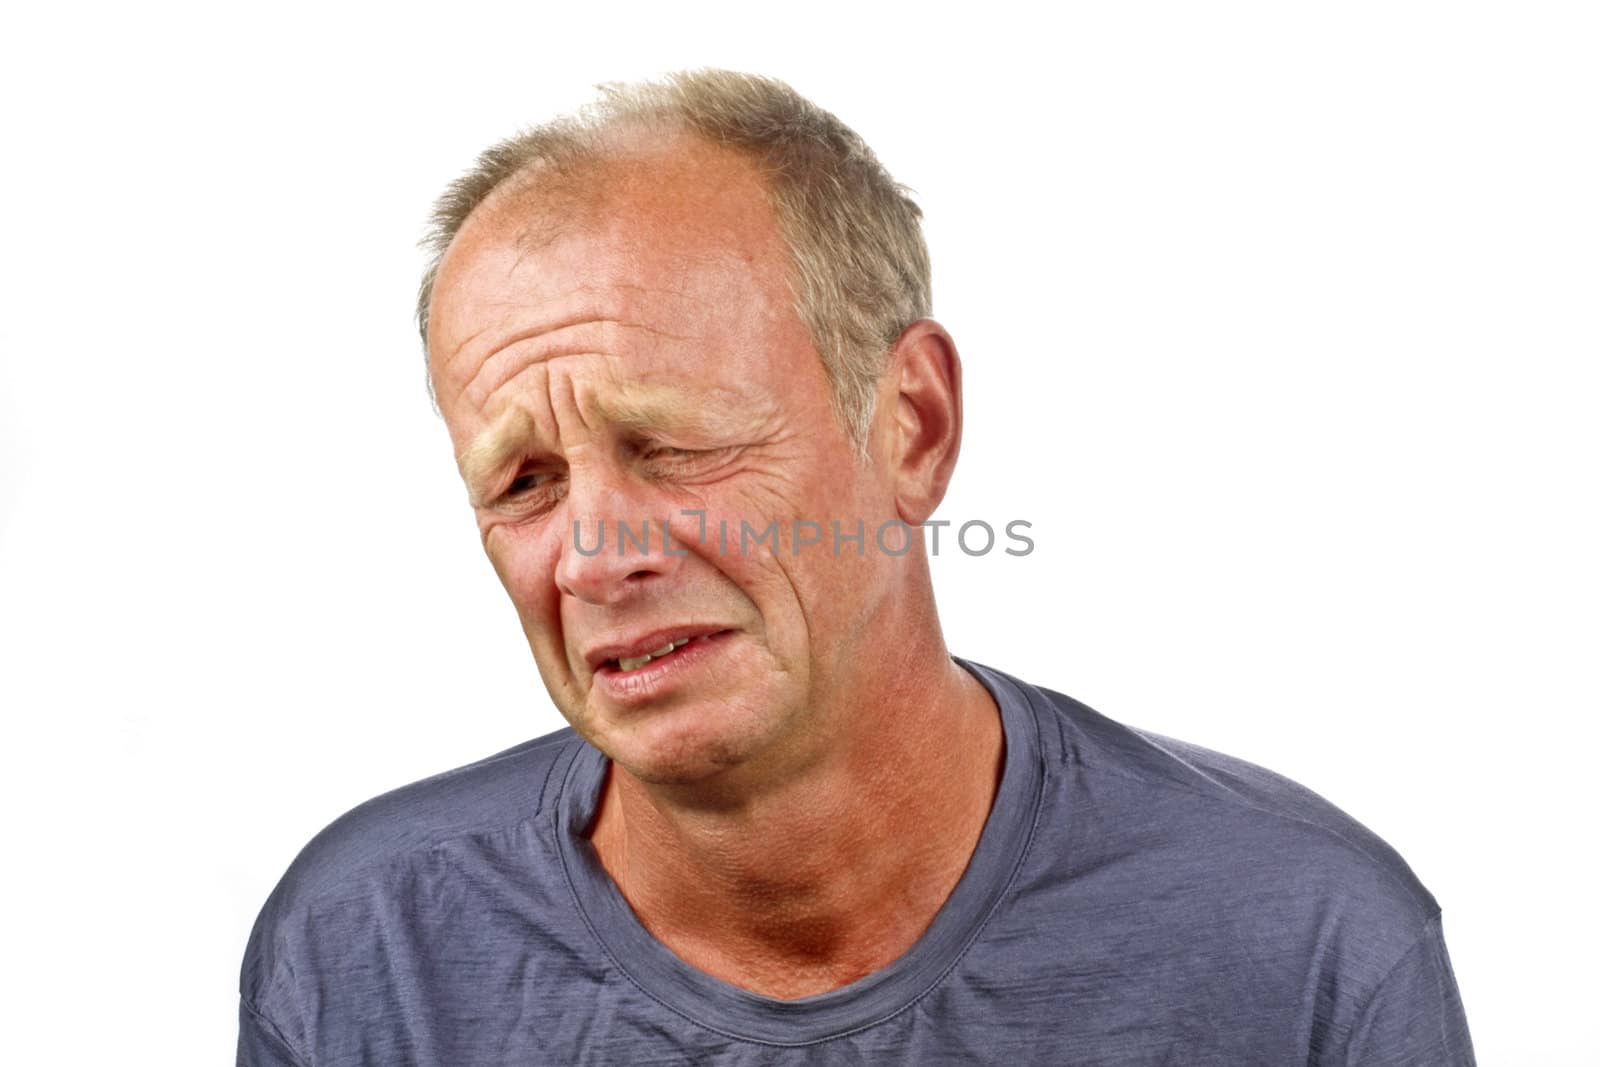 Sad man on a white background